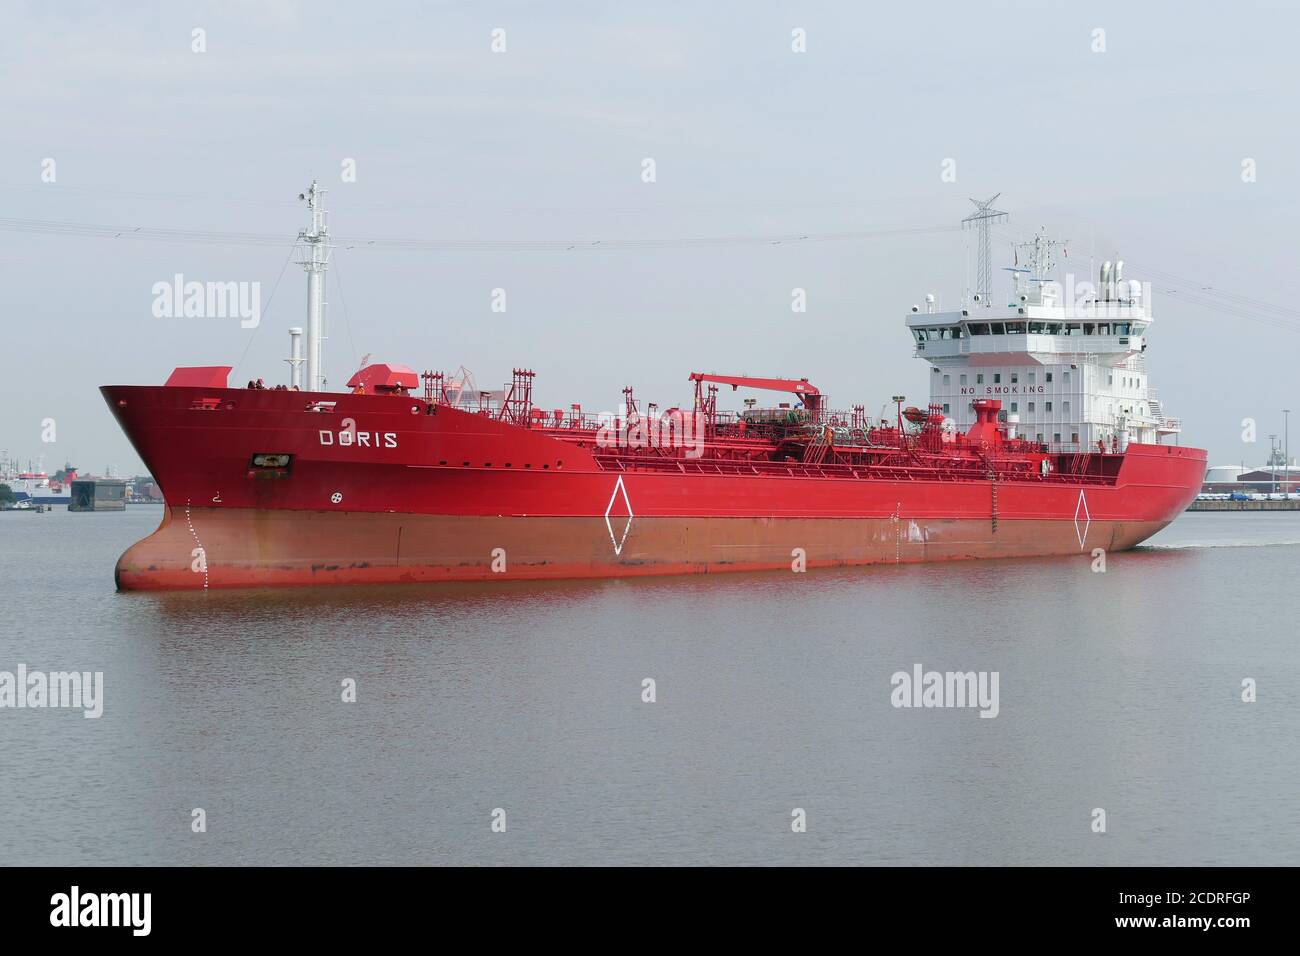 Der Tanker Doris wird am 1. August 2020 den Hafen von Emden verlassen. Stockfoto